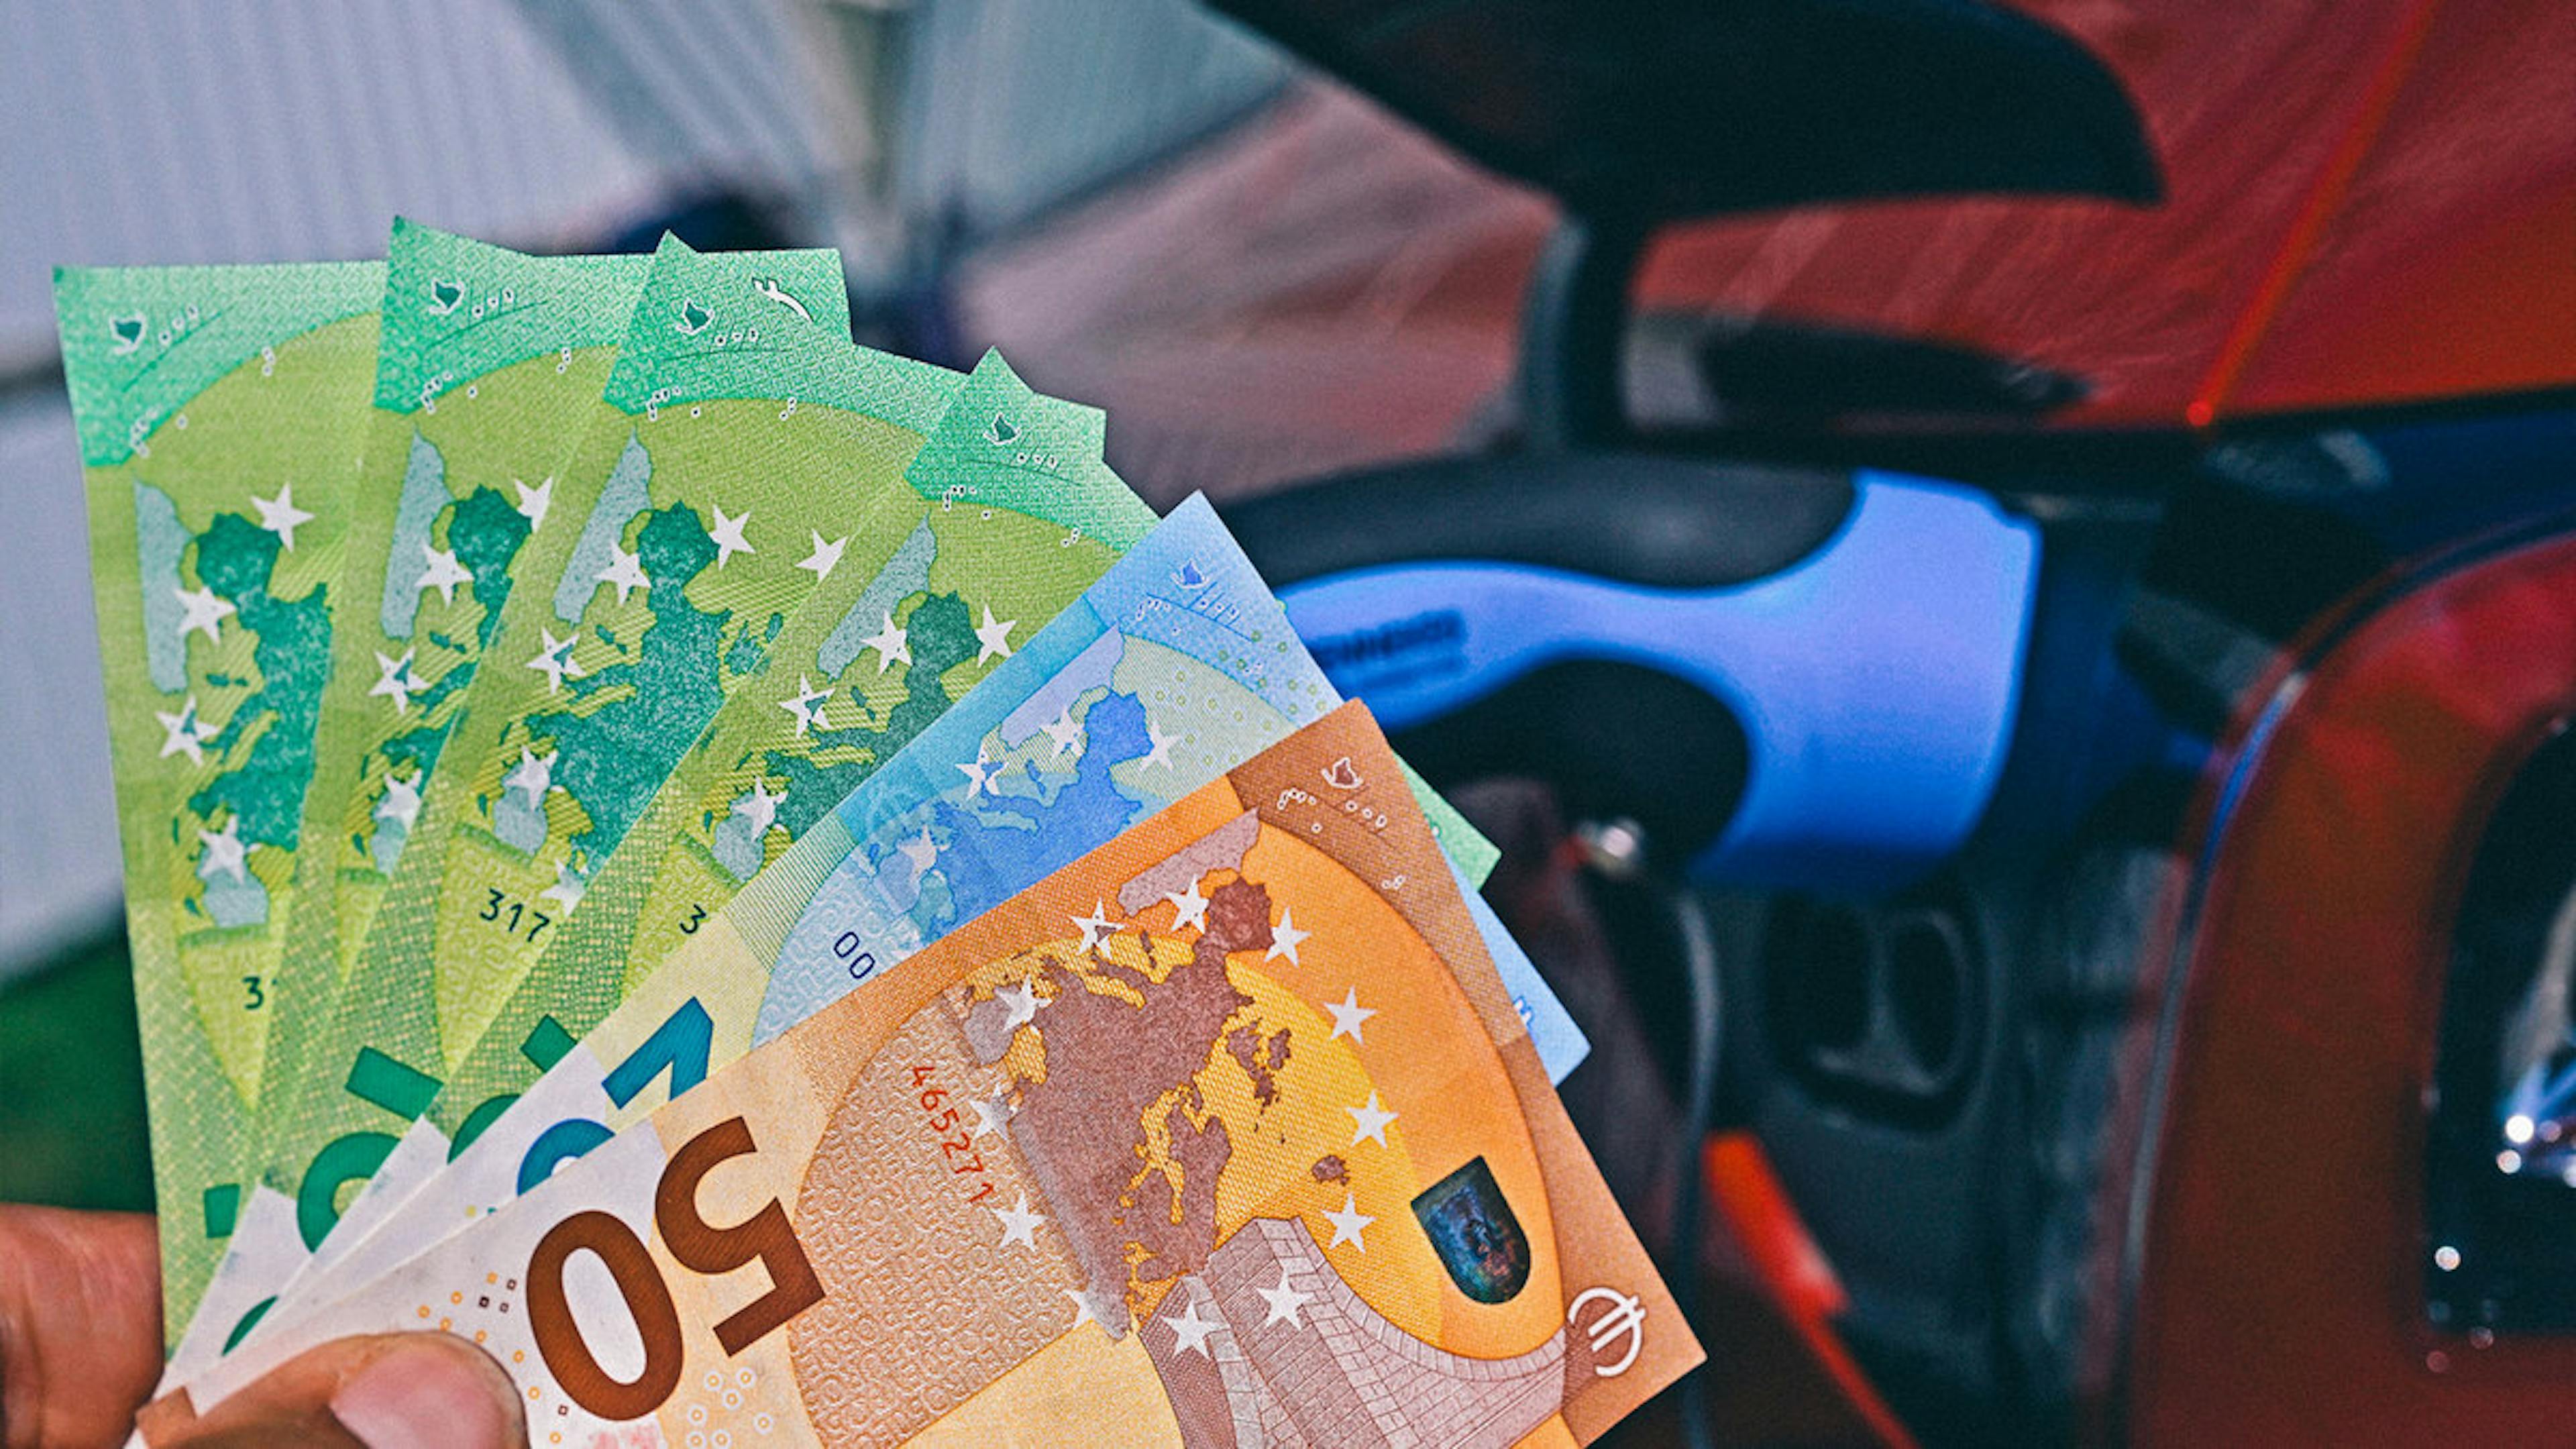 Eine Hand hält Geldscheine, im Hintergrund ist der Innenraum eines Fahrzeugs